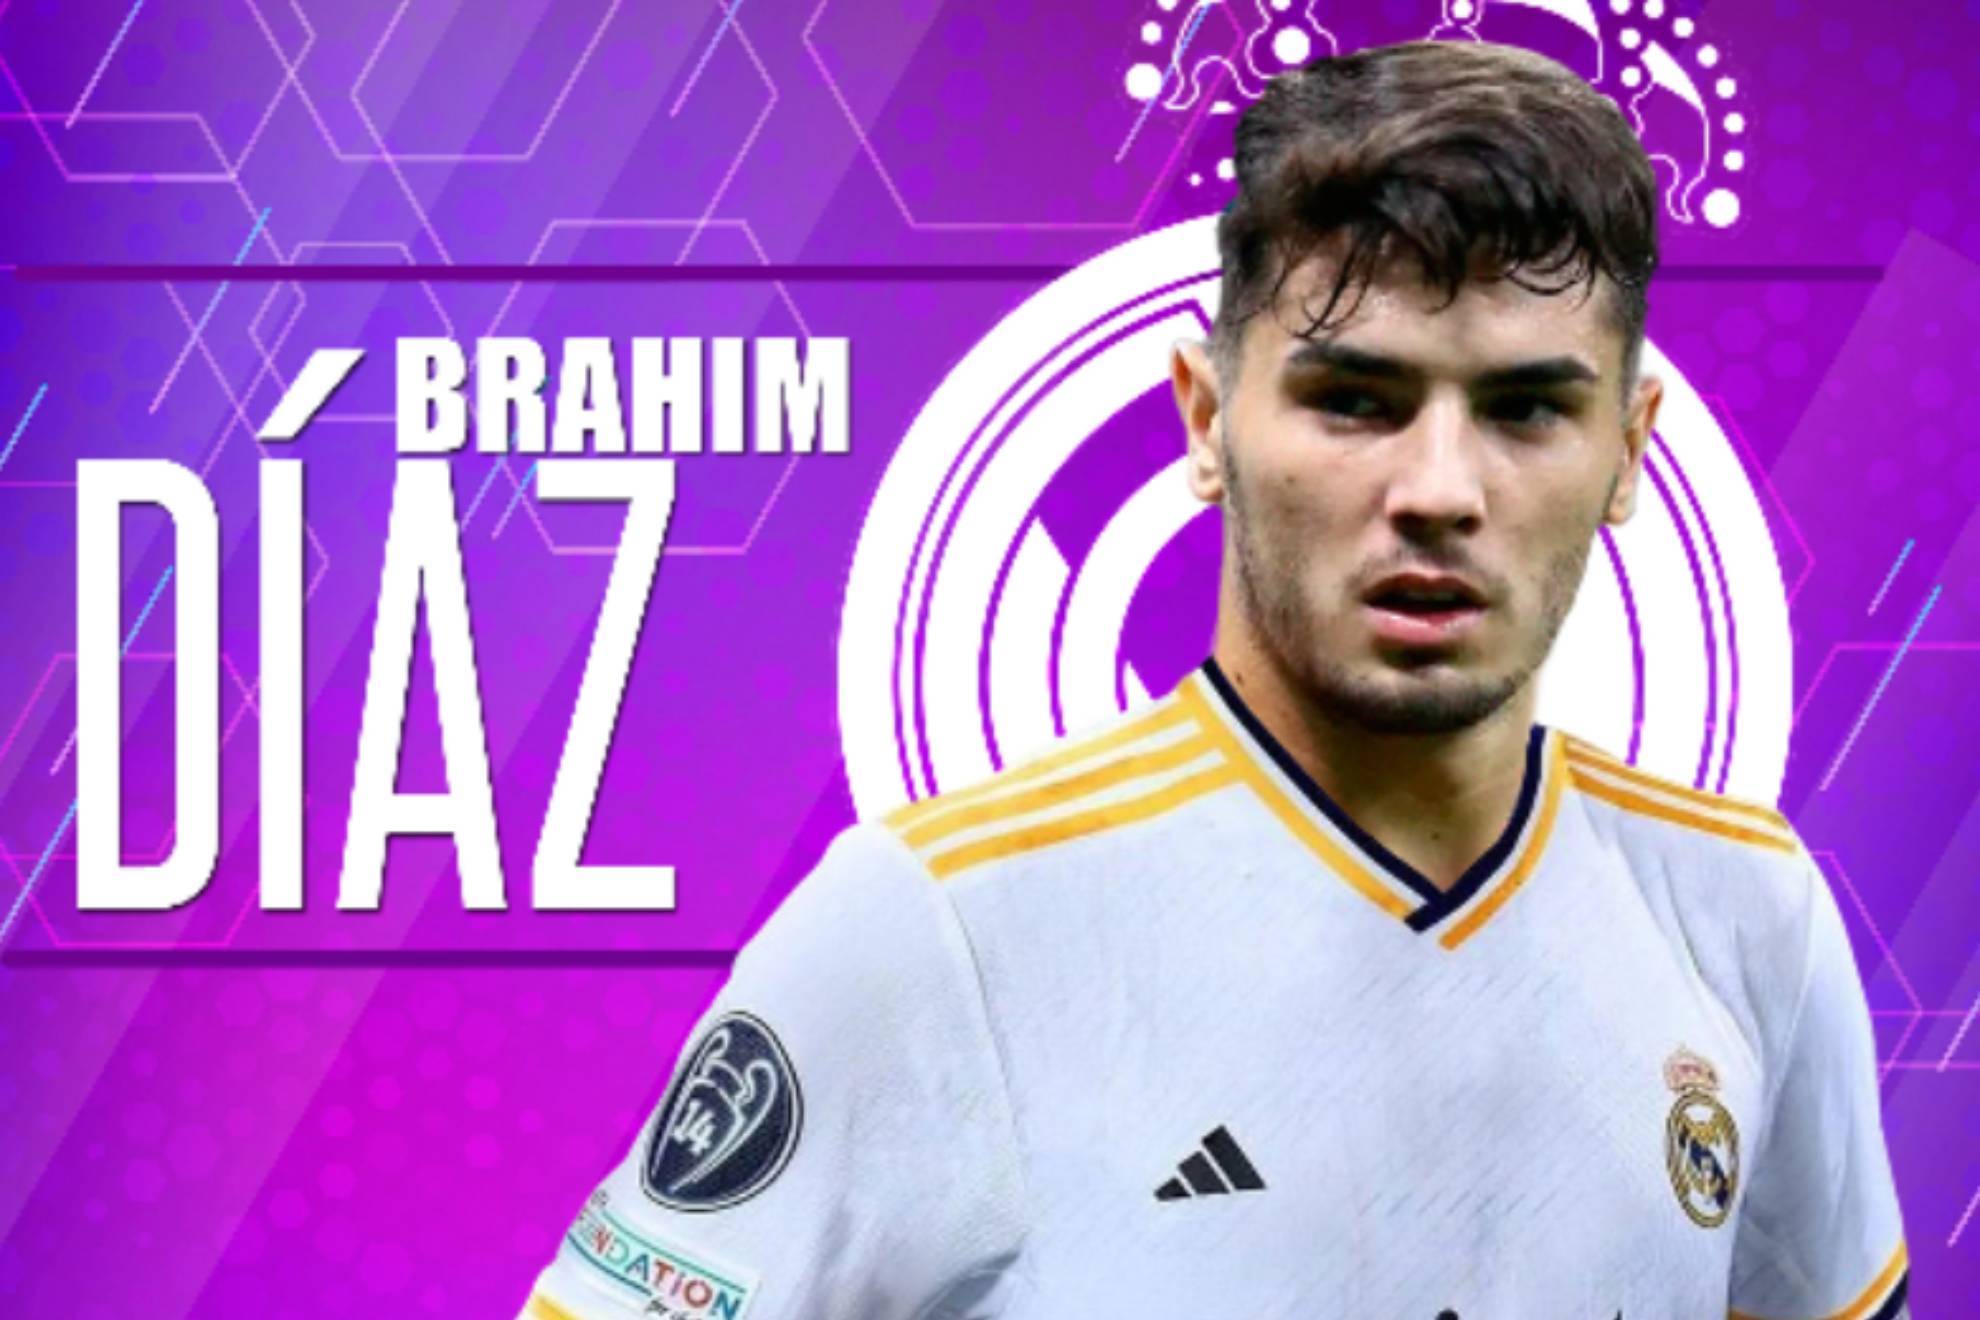 Brahim renueva con el Real Madrid hasta 2027 y será importante en la plantilla 23-24